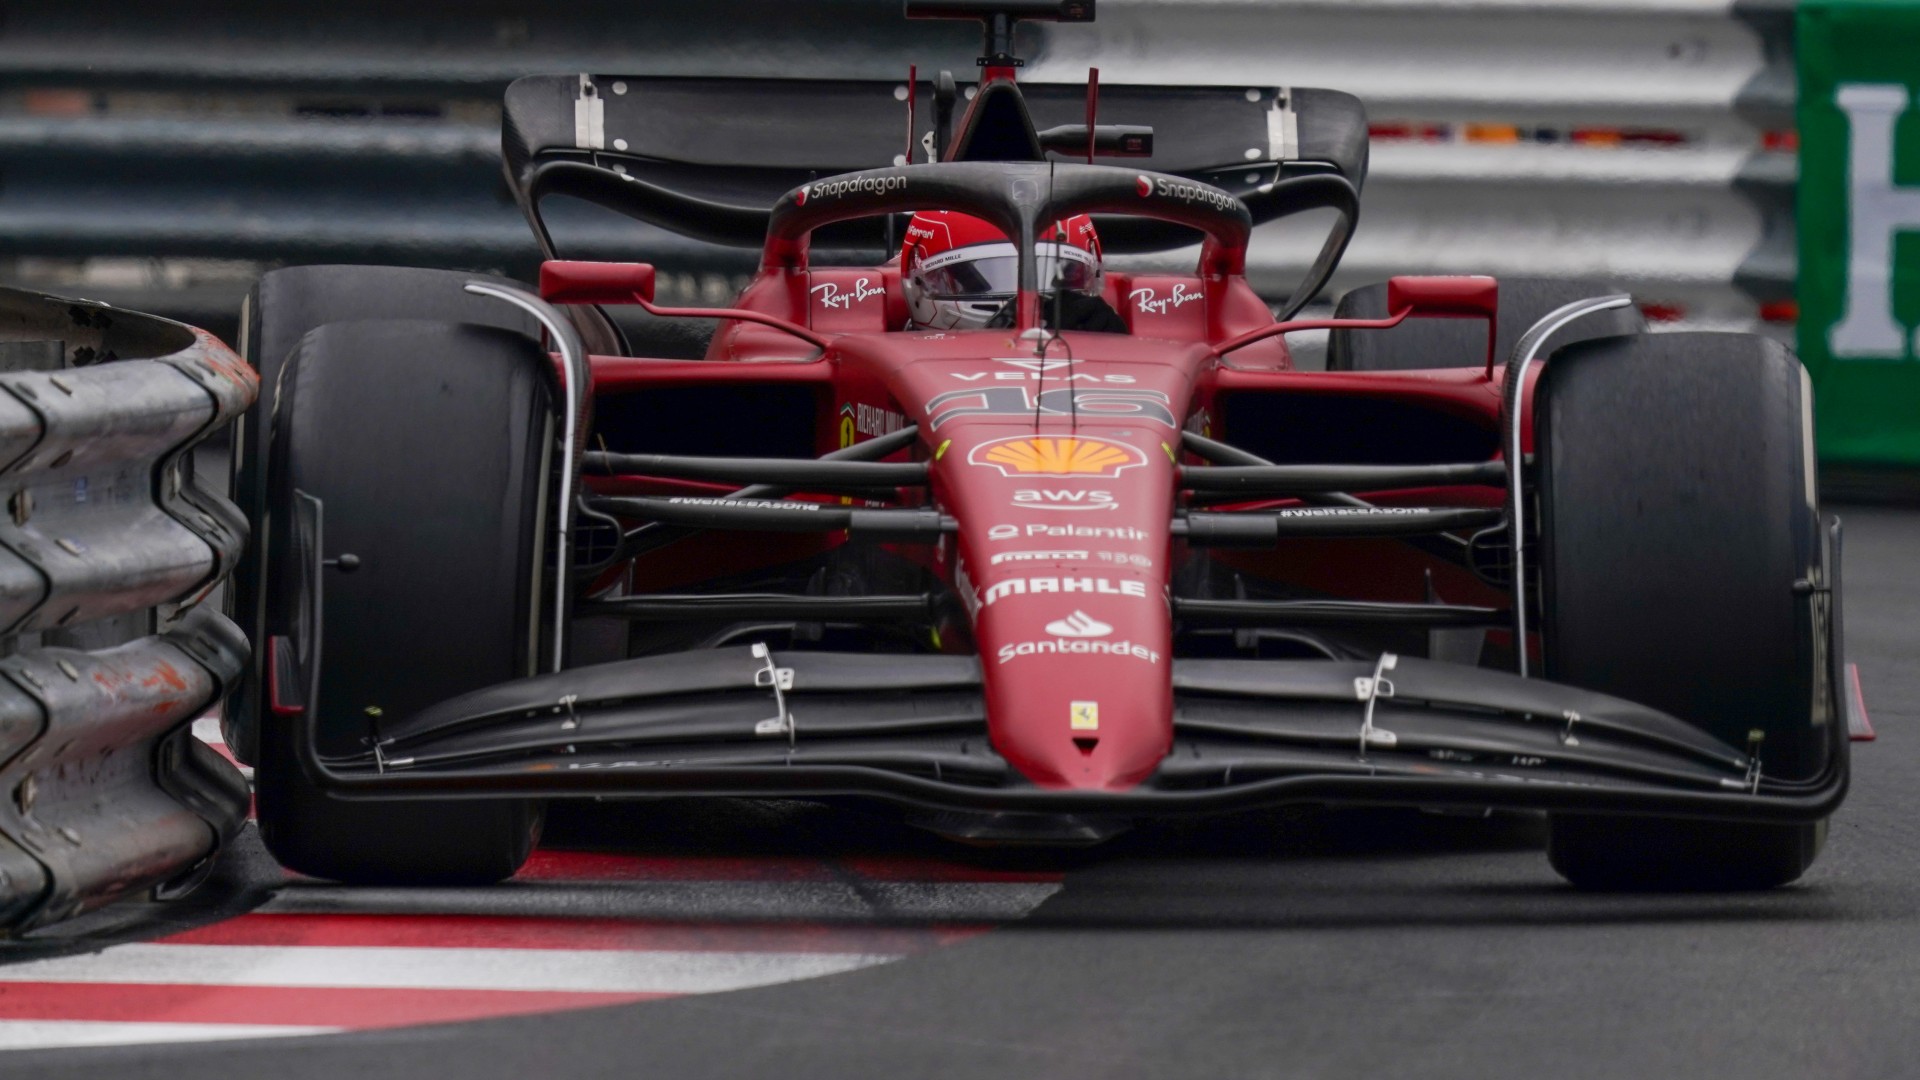 2022 Monaco Grand Prix F1 race result